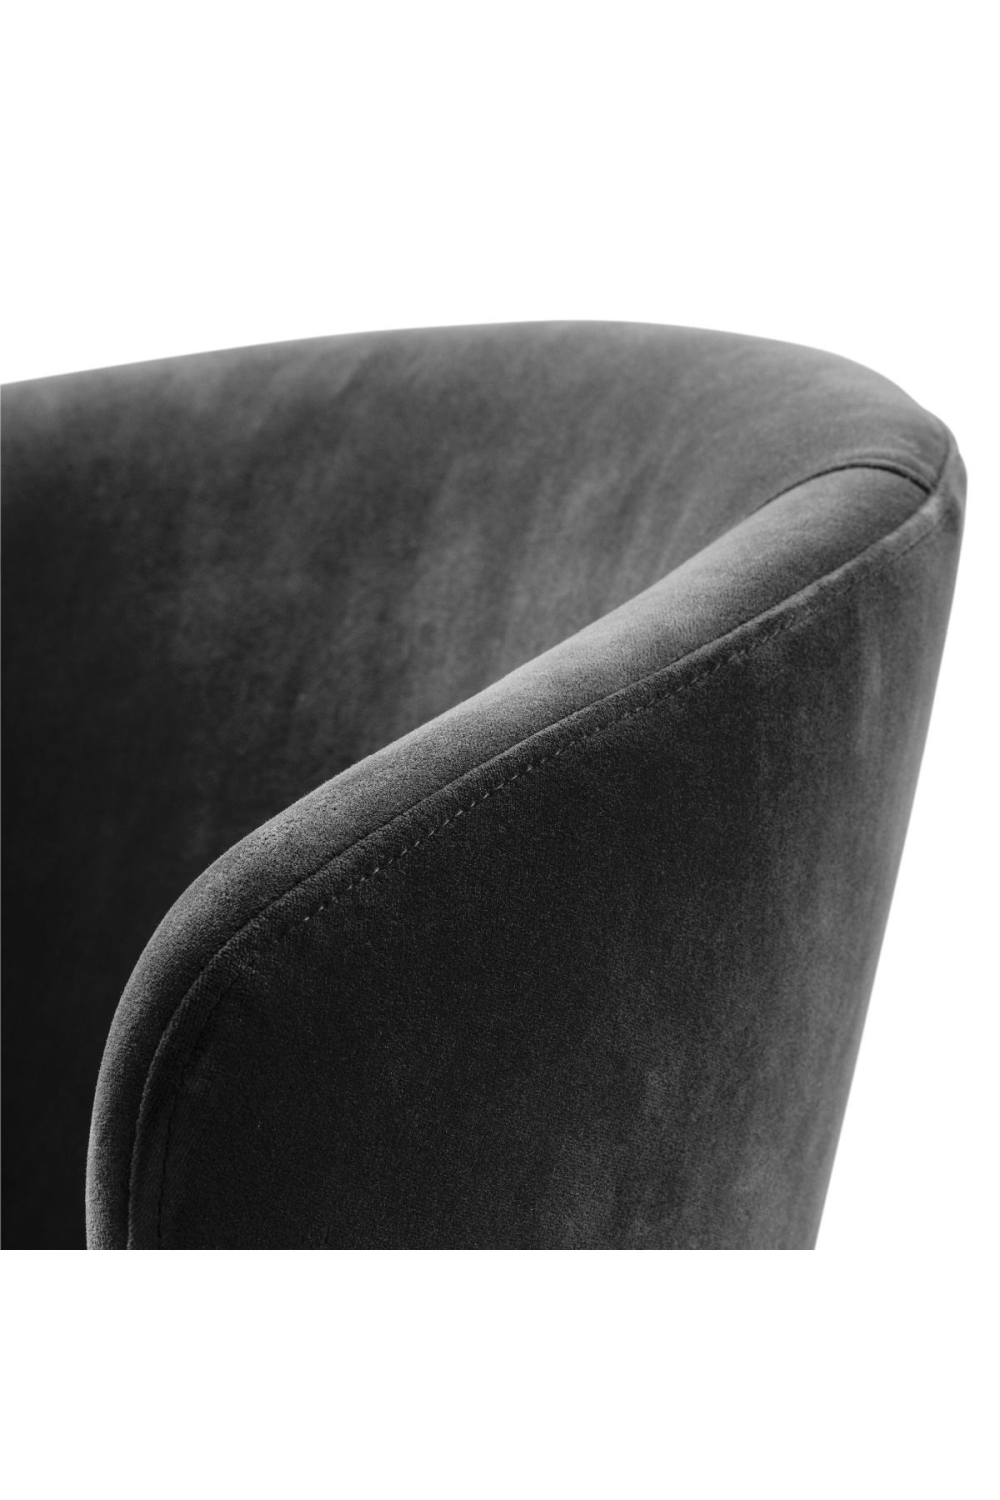 Velvet Dining Chair | Eichholtz Kinley | Oroa.com